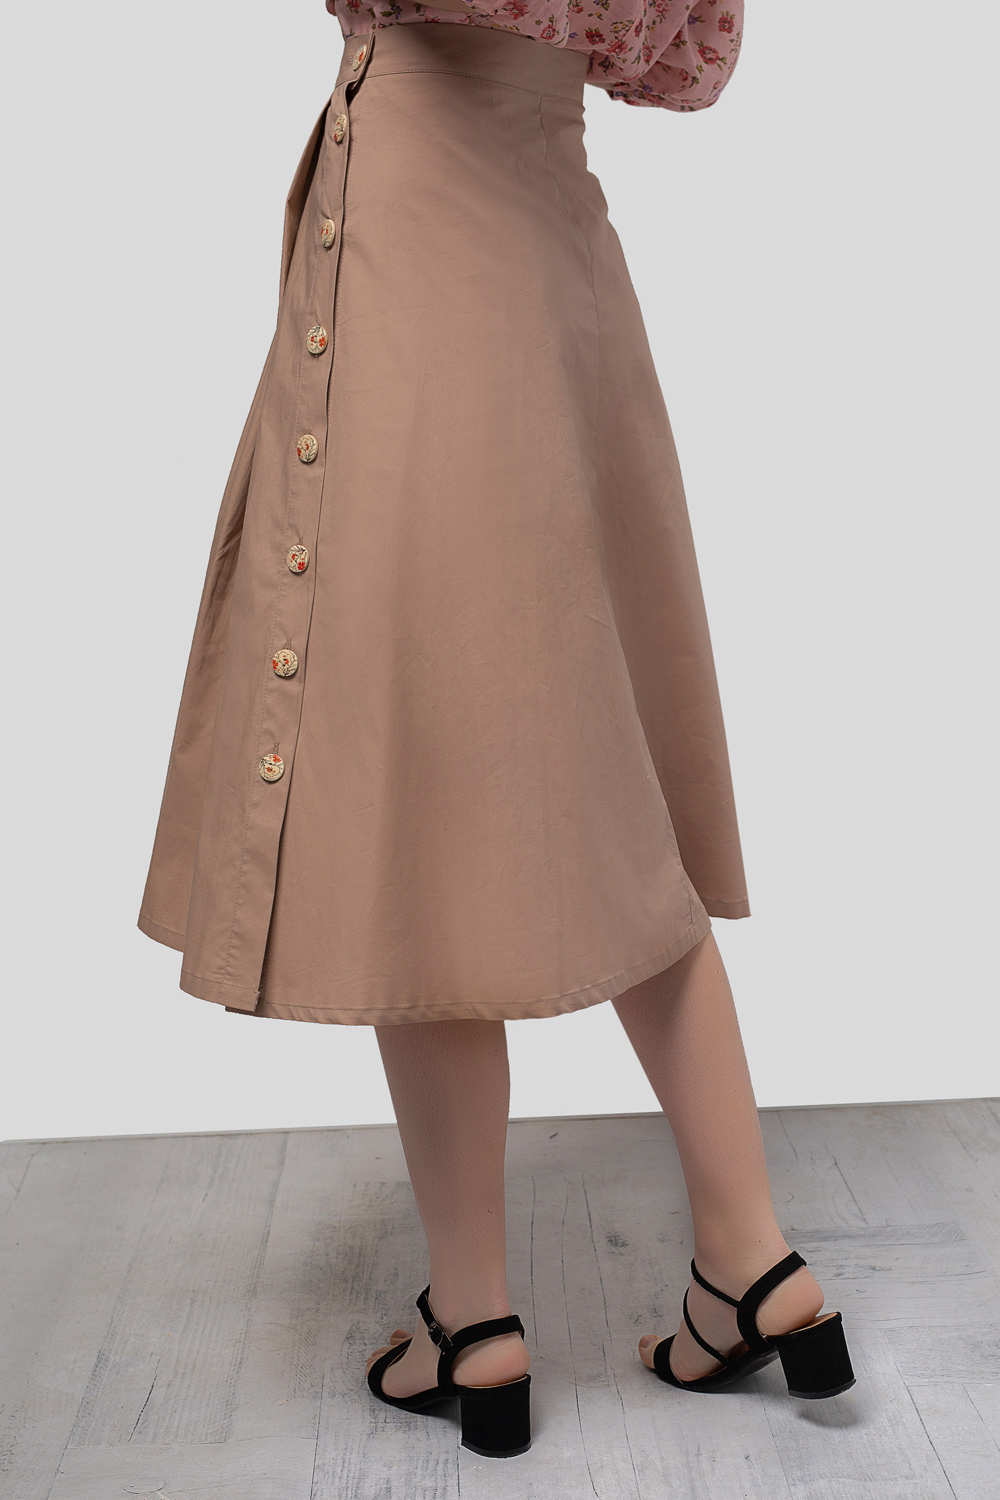 Hazelnut skirt with wooden buttons